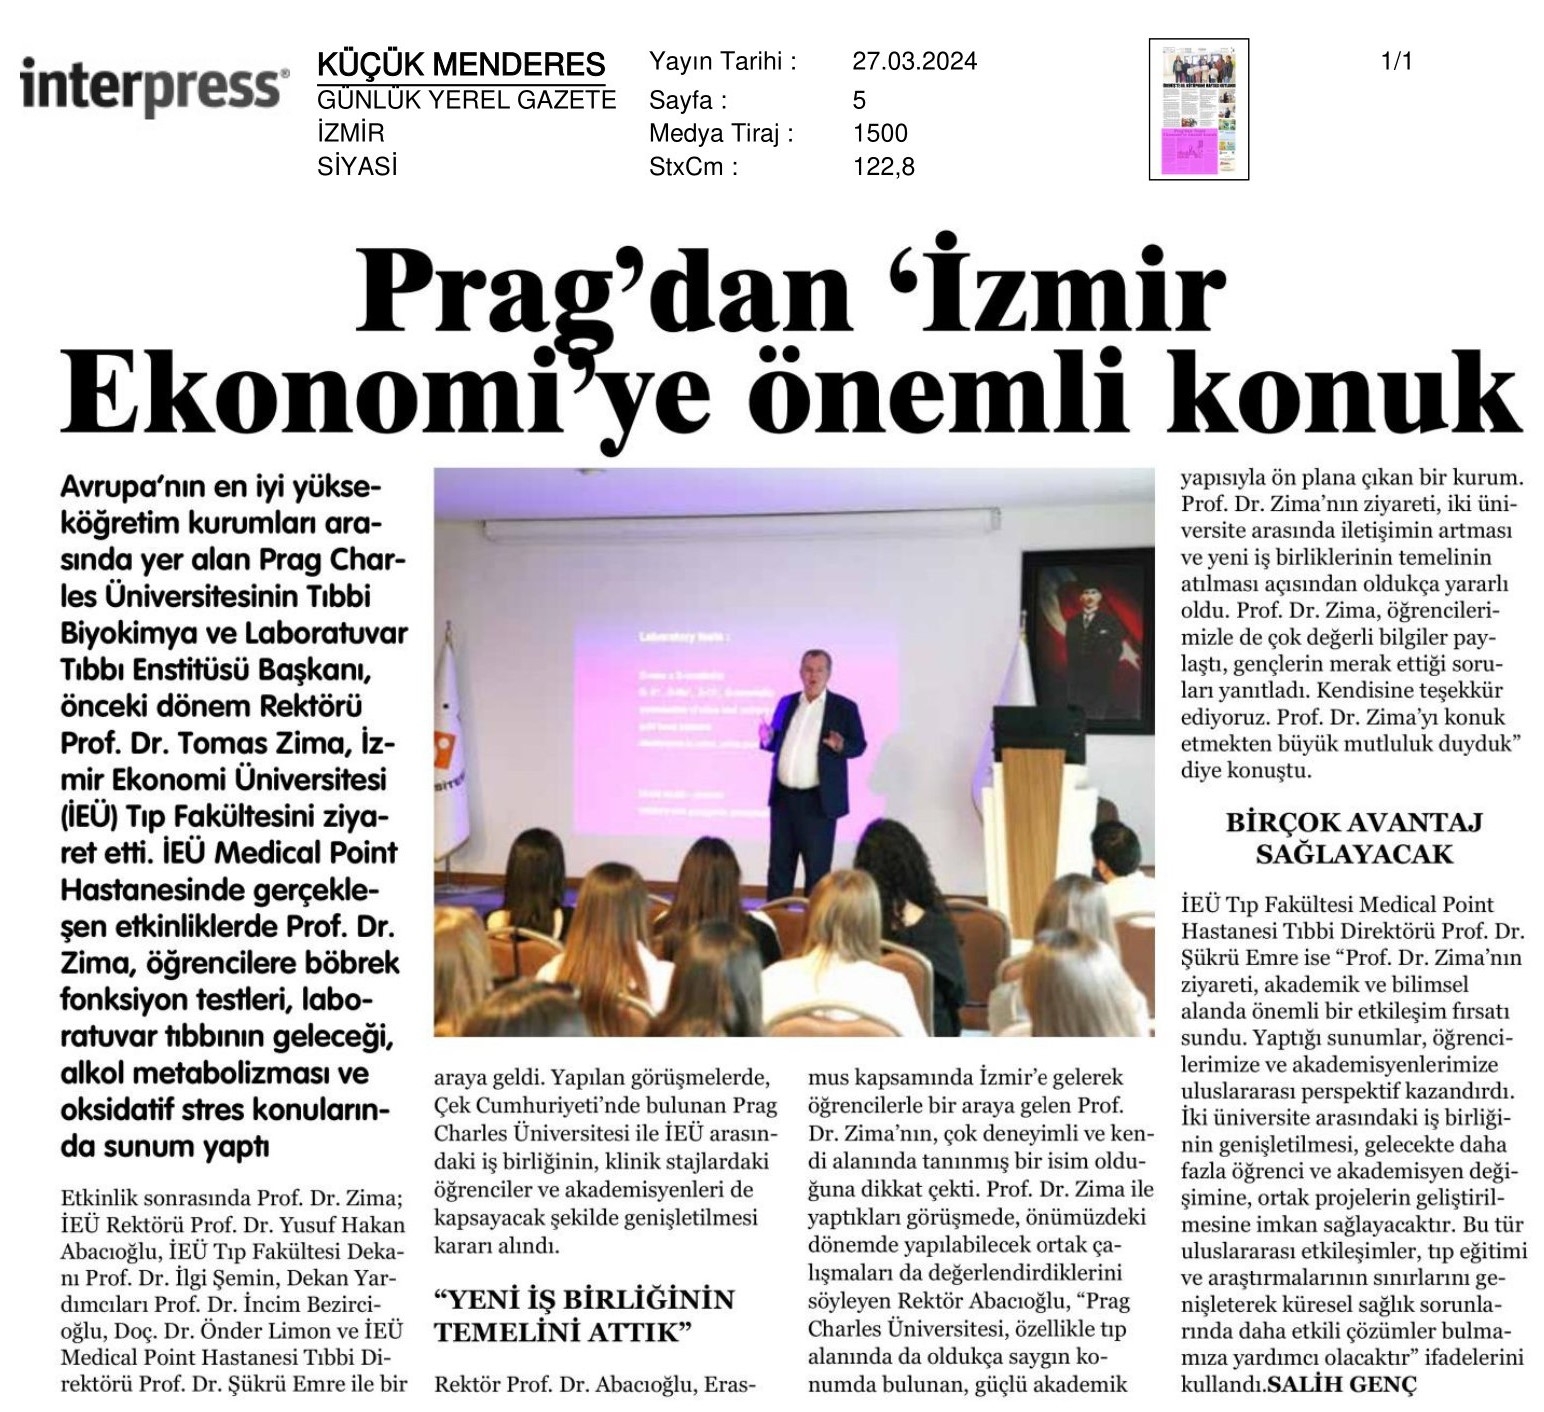 Prag’dan İzmir Ekonomi’ye Önemli Konuk